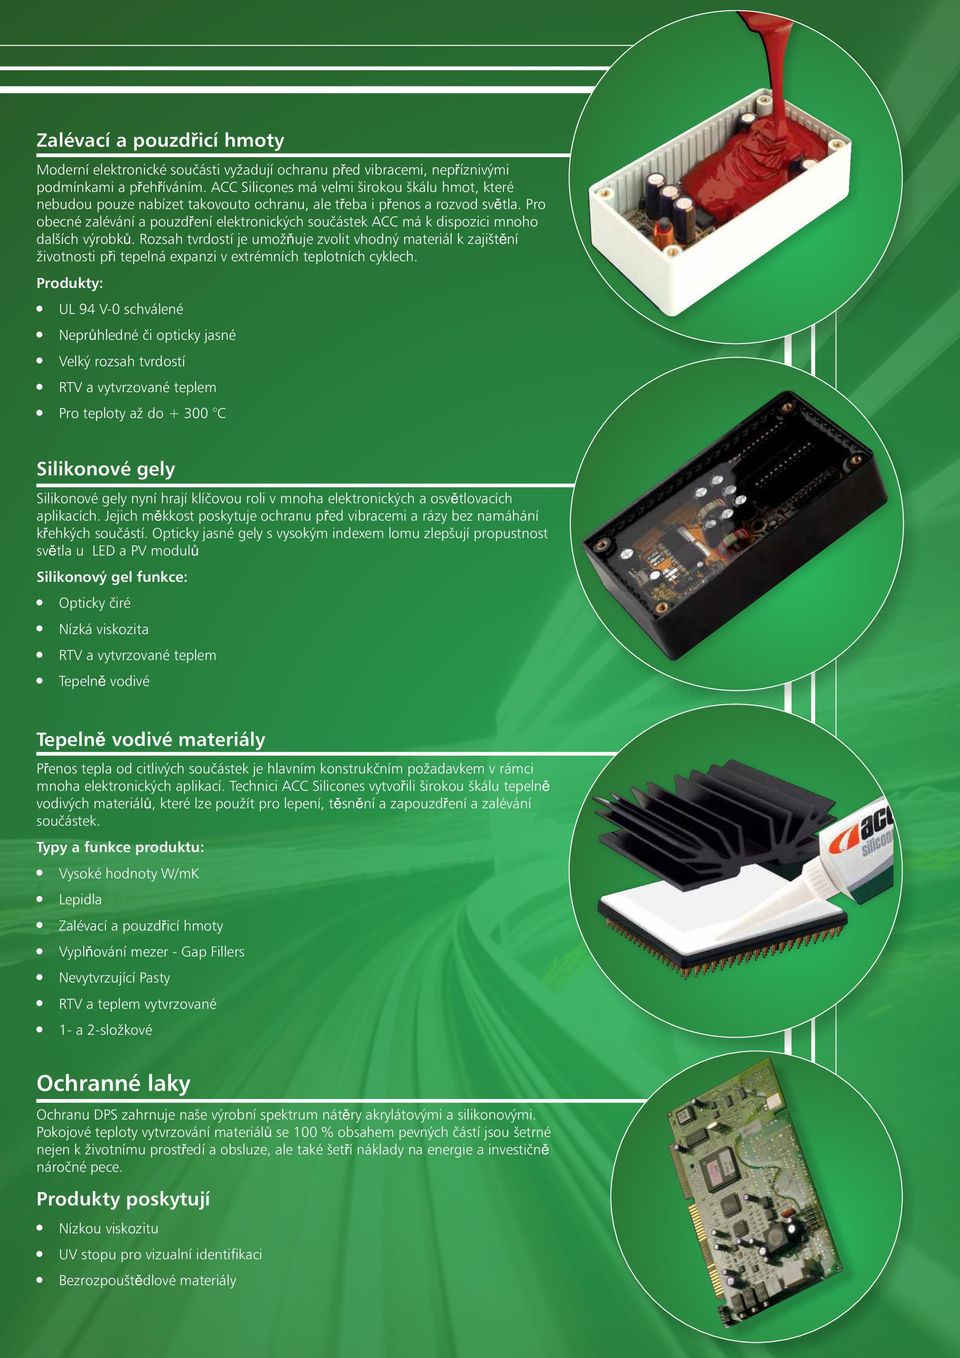 Pro obecné zalévání a pouzdření elektronických součástek ACC má k dispozici mnoho dalších výrobků.